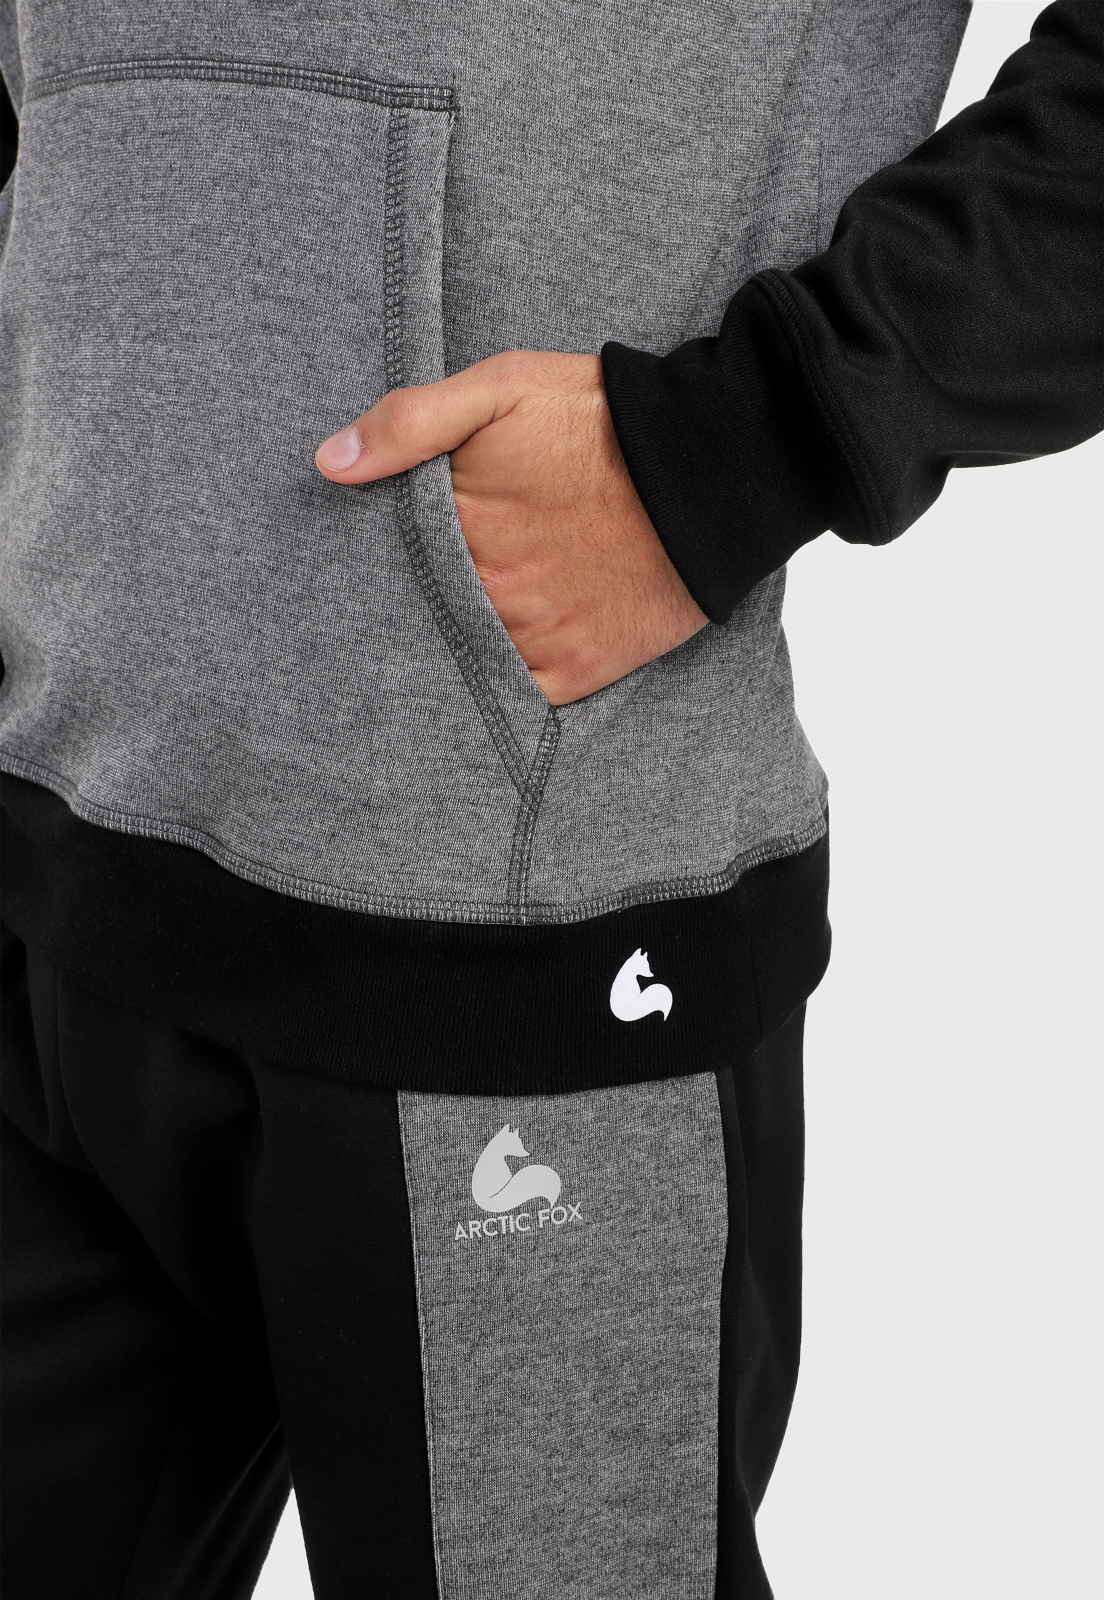 Detalle en bolsillo de hombre vistiendo el buzo hoodie negro y gris para hombre con capota forrada gris.